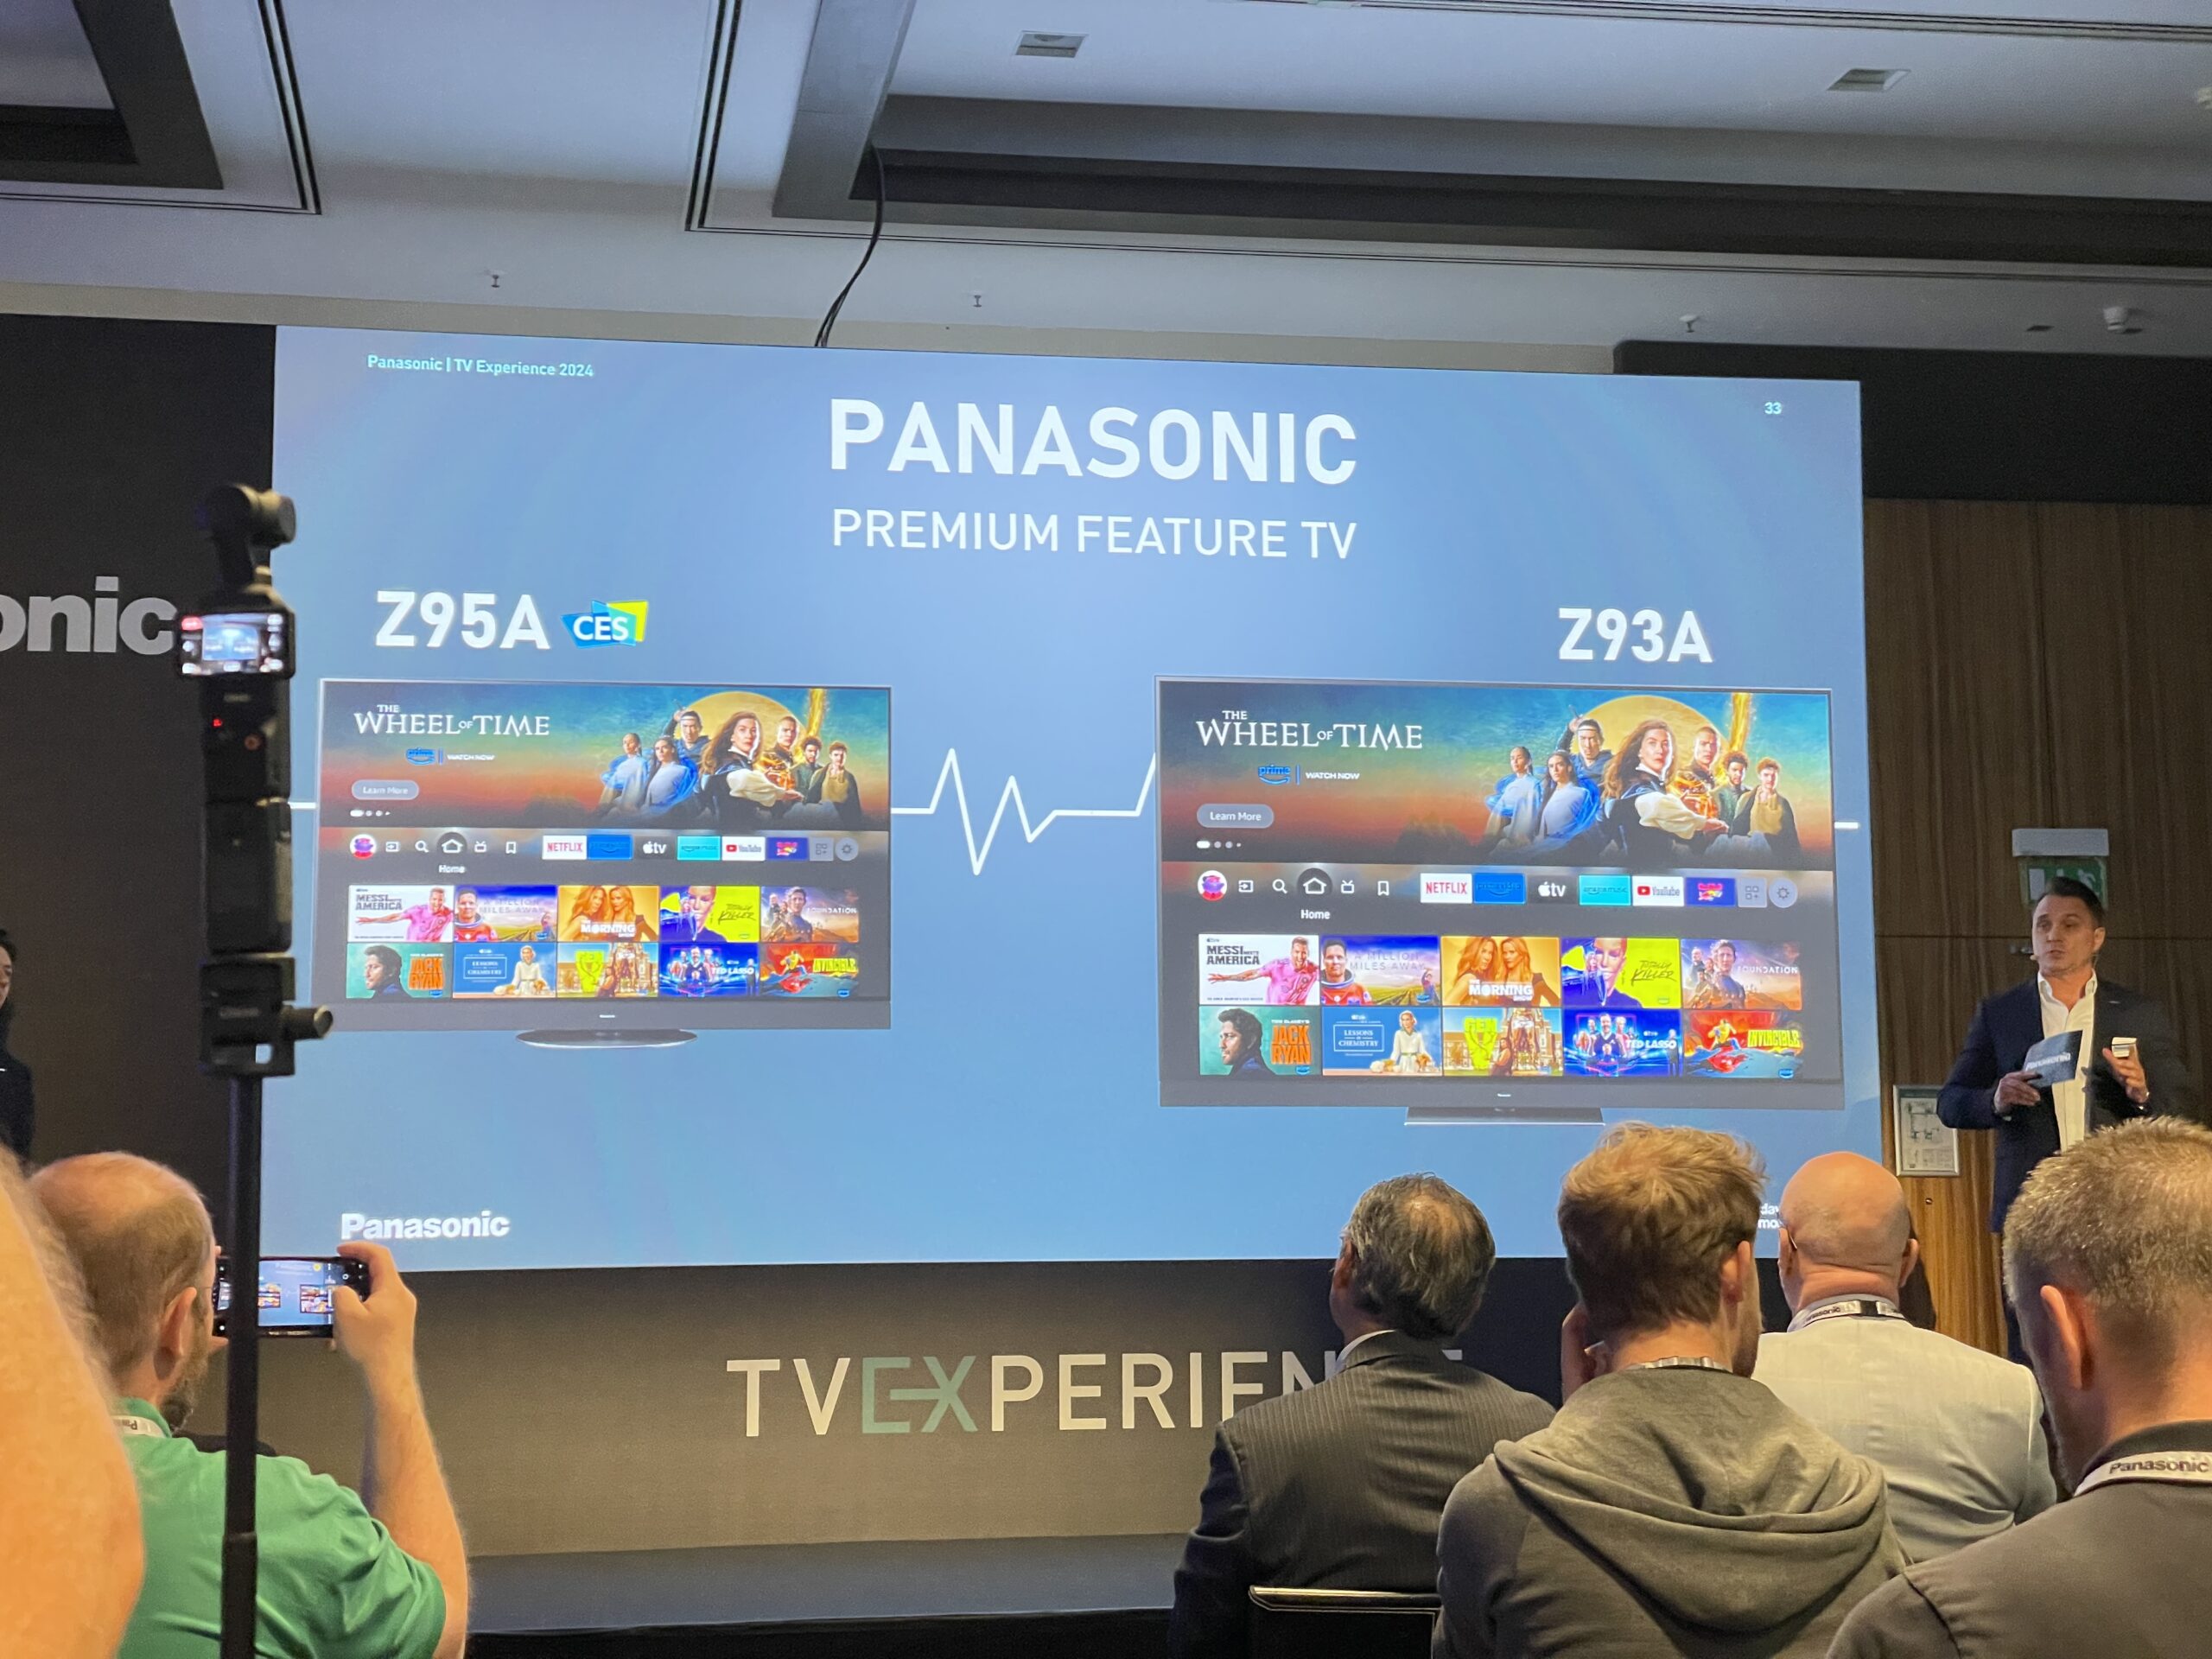 Pessoas na apresentação das TVs Panasonic Z95A e Z93A, com telas iniciais e aplicativos exibidos.